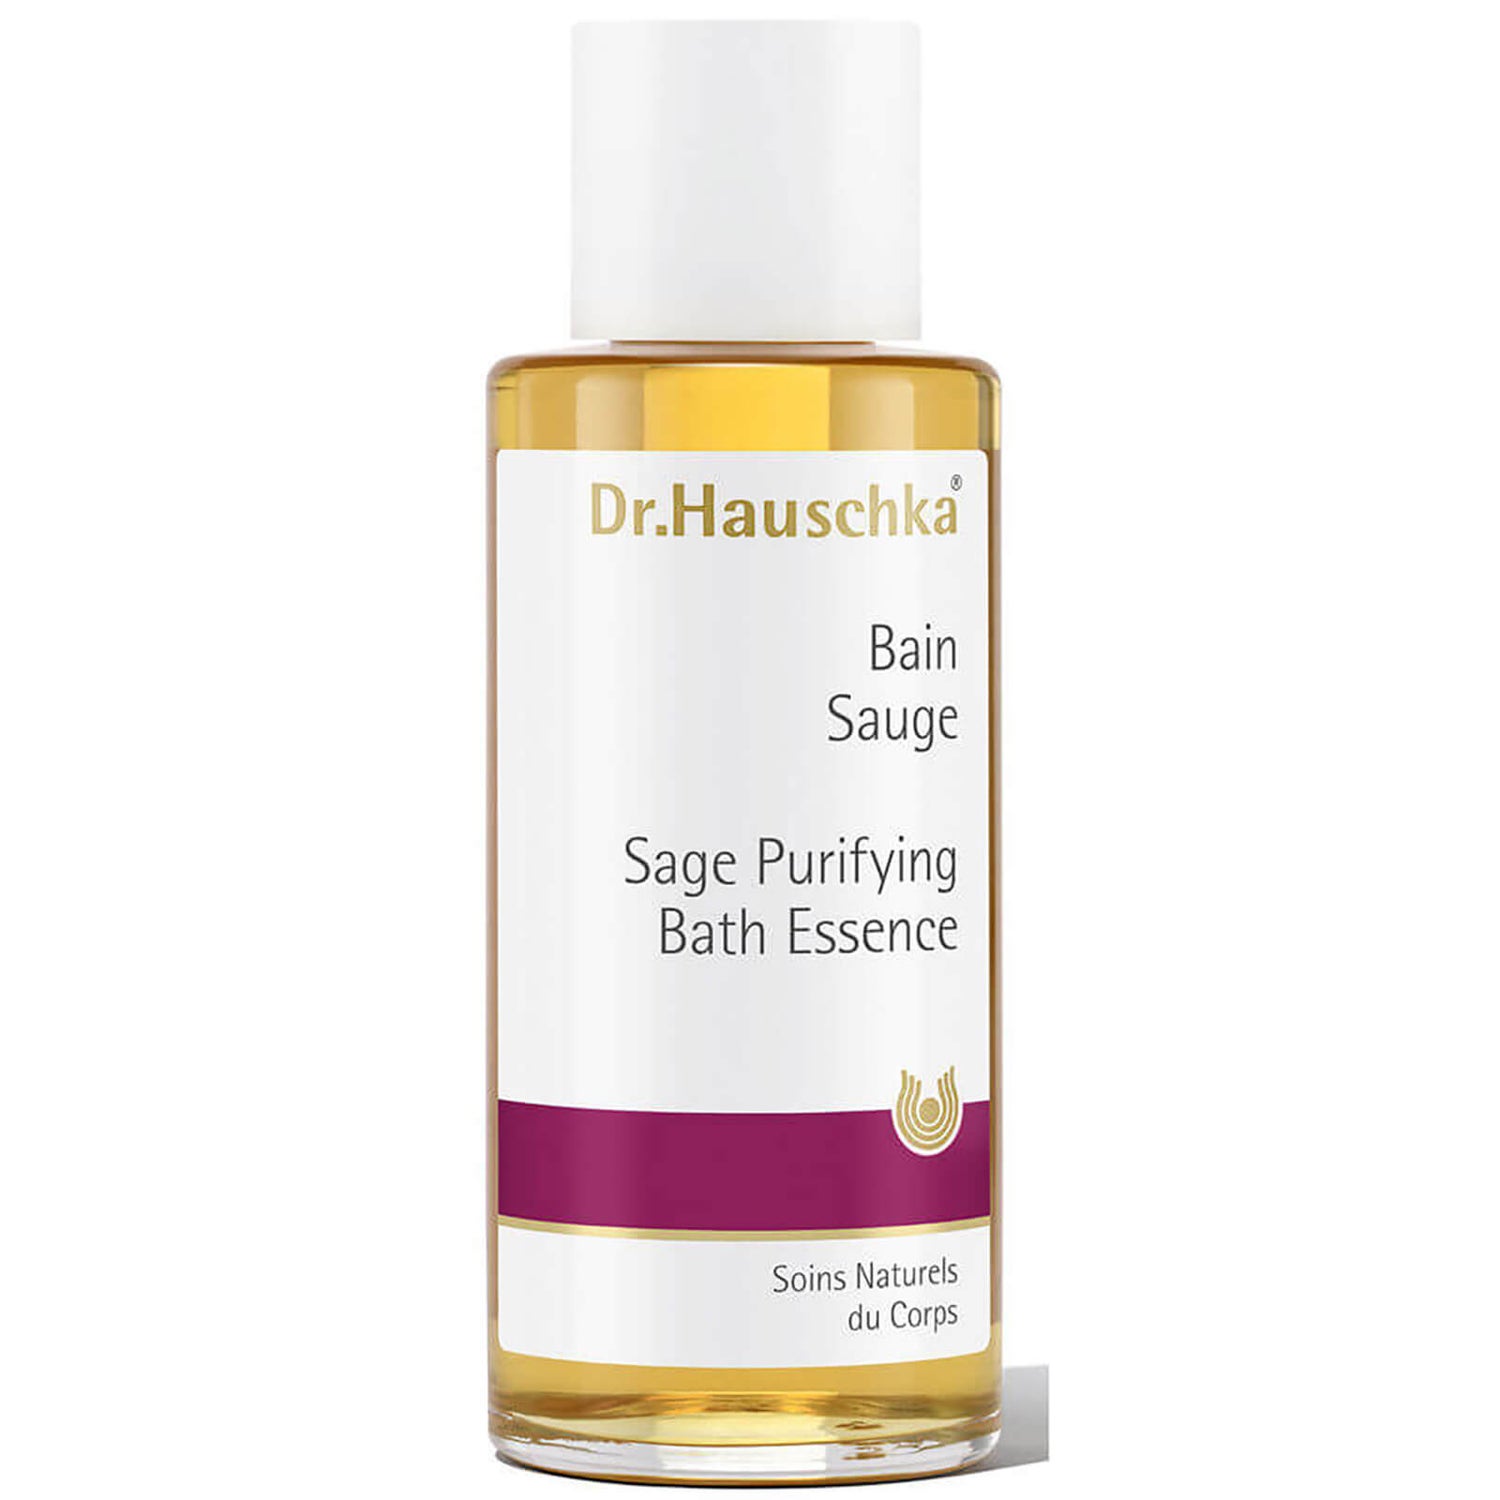 Очищающая эссенция для ванны с экстрактом шалфея Dr. Hauschka Sage Purifying Bath Essence (100 мл)